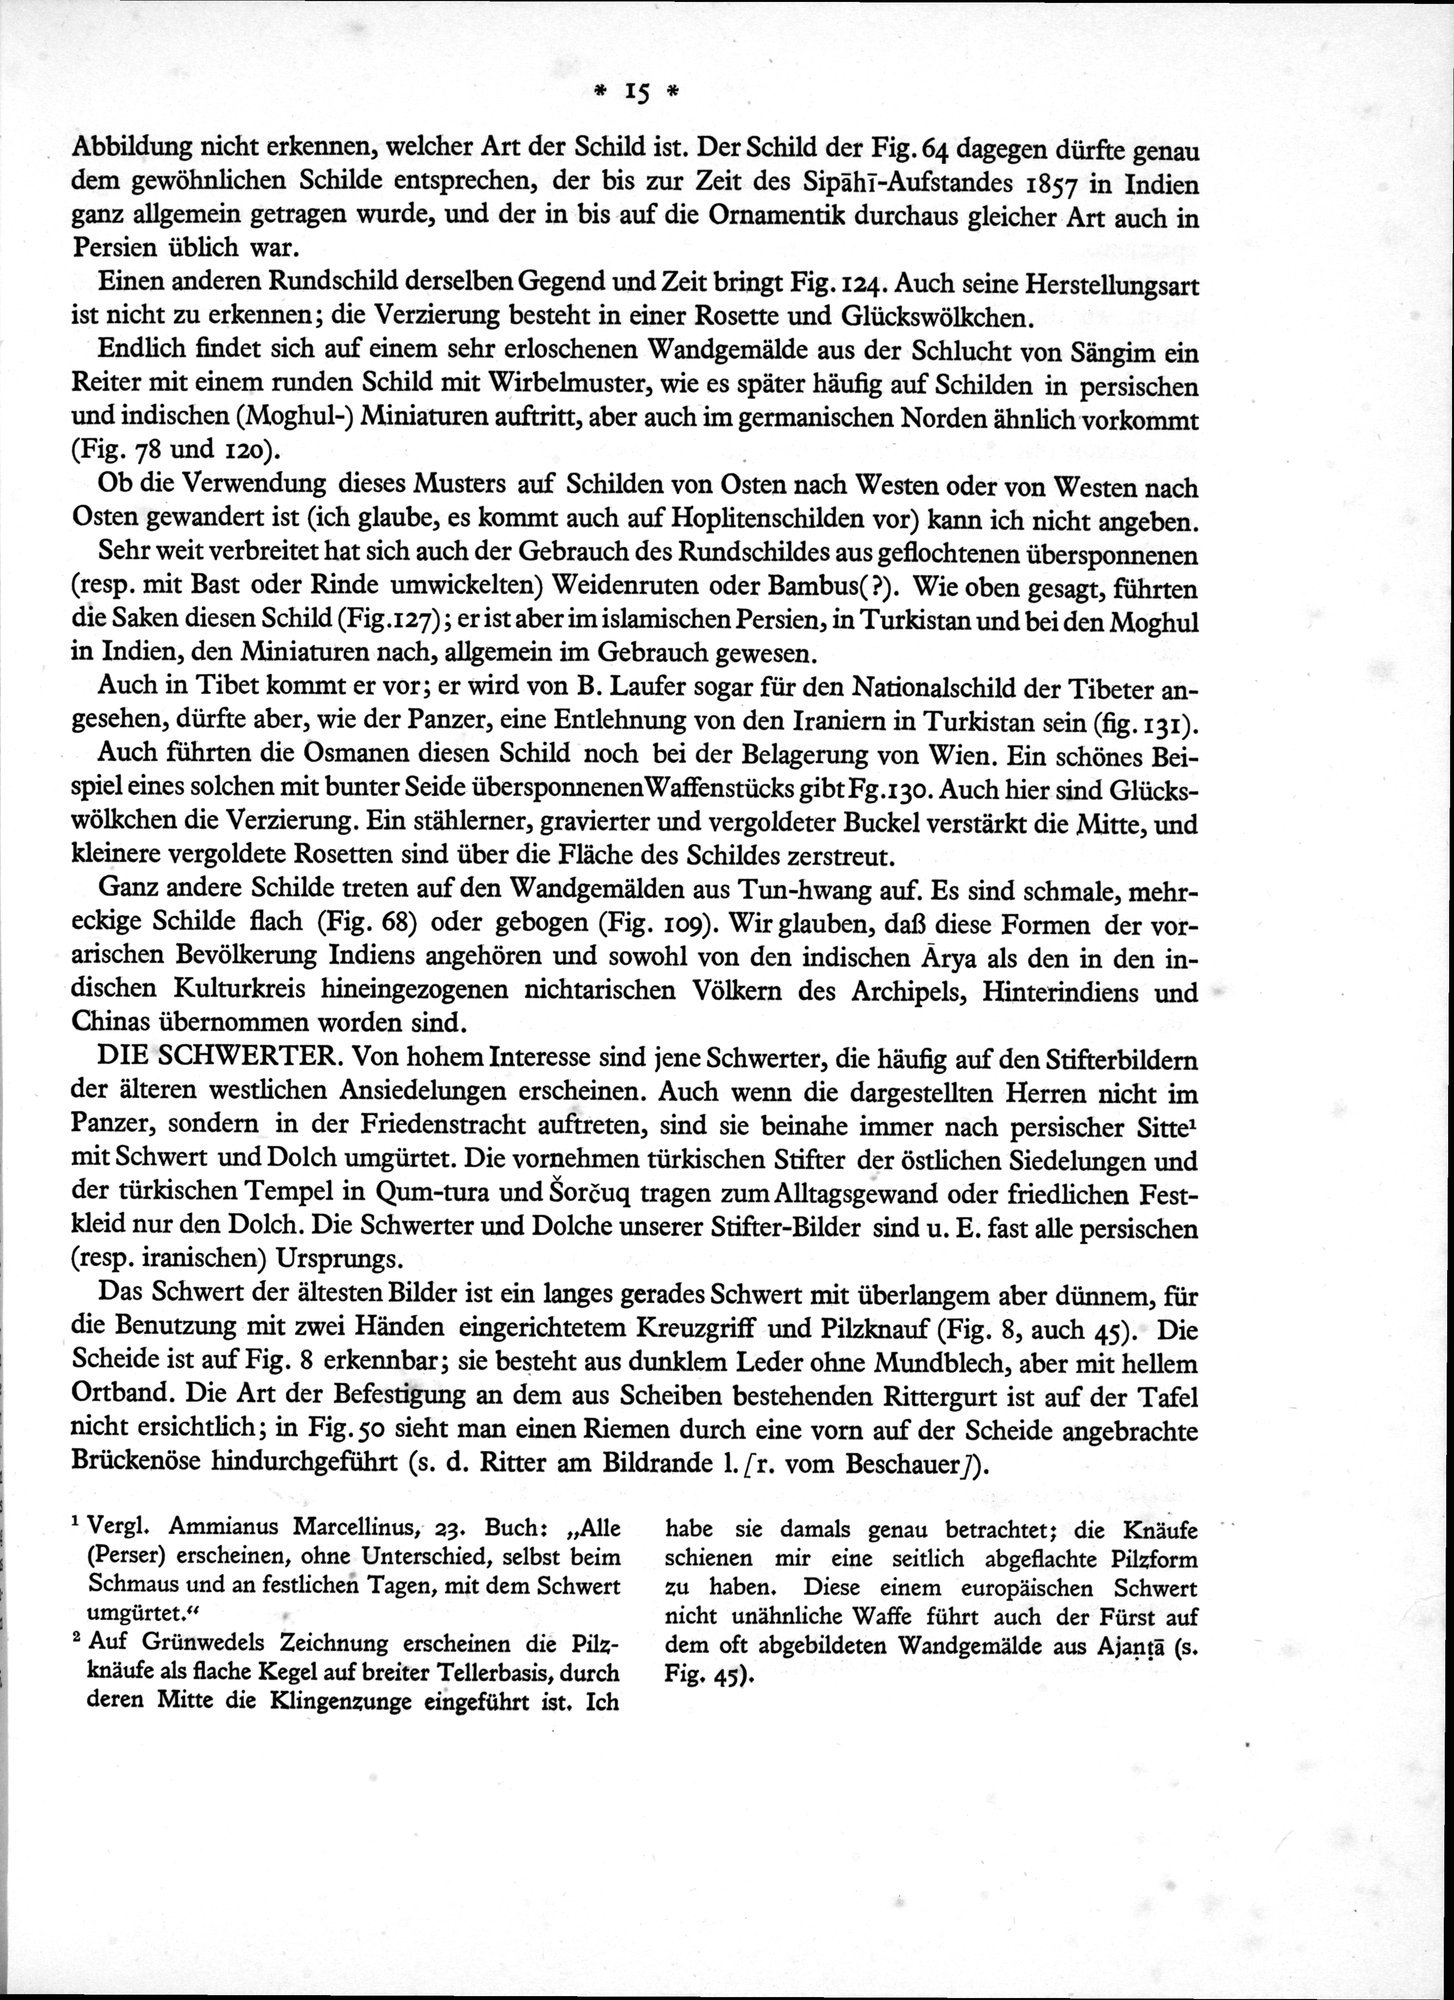 Bilderatlas zur Kunst und Kulturgeschichte Mittel-Asiens : vol.1 / Page 19 (Grayscale High Resolution Image)